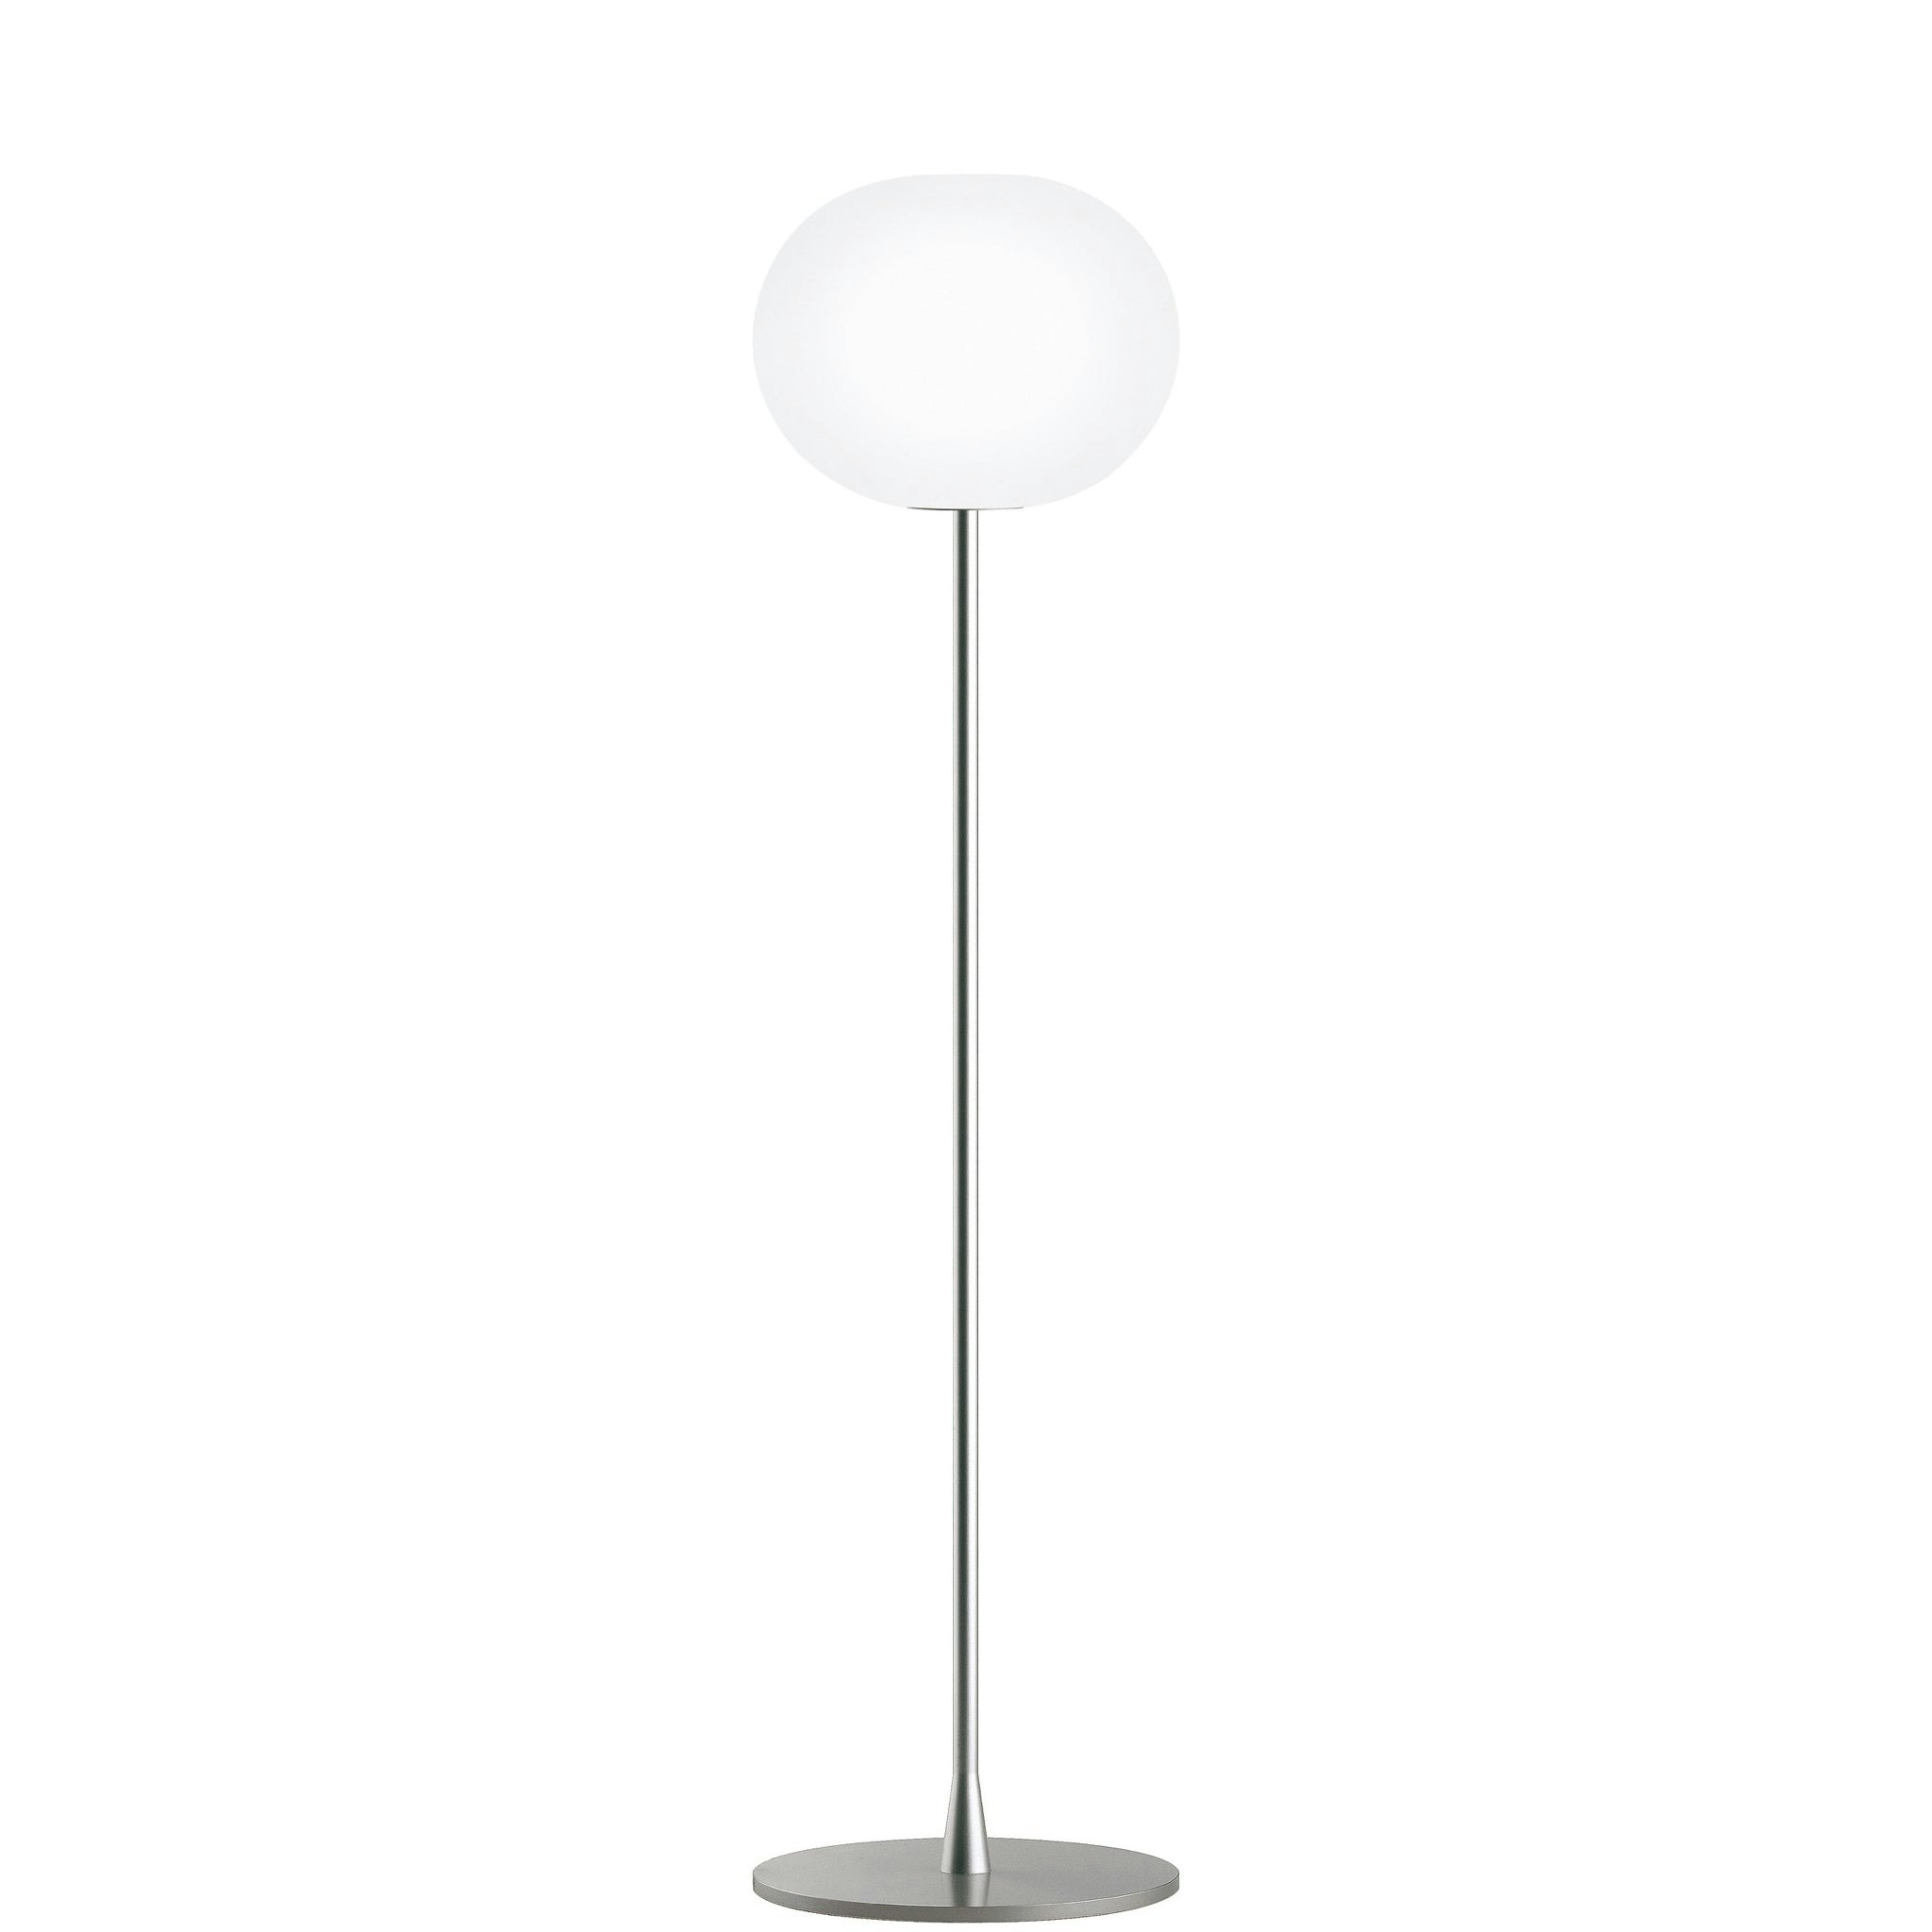 Glo Ball Floor Lamp by Jasper Morrison for Flos